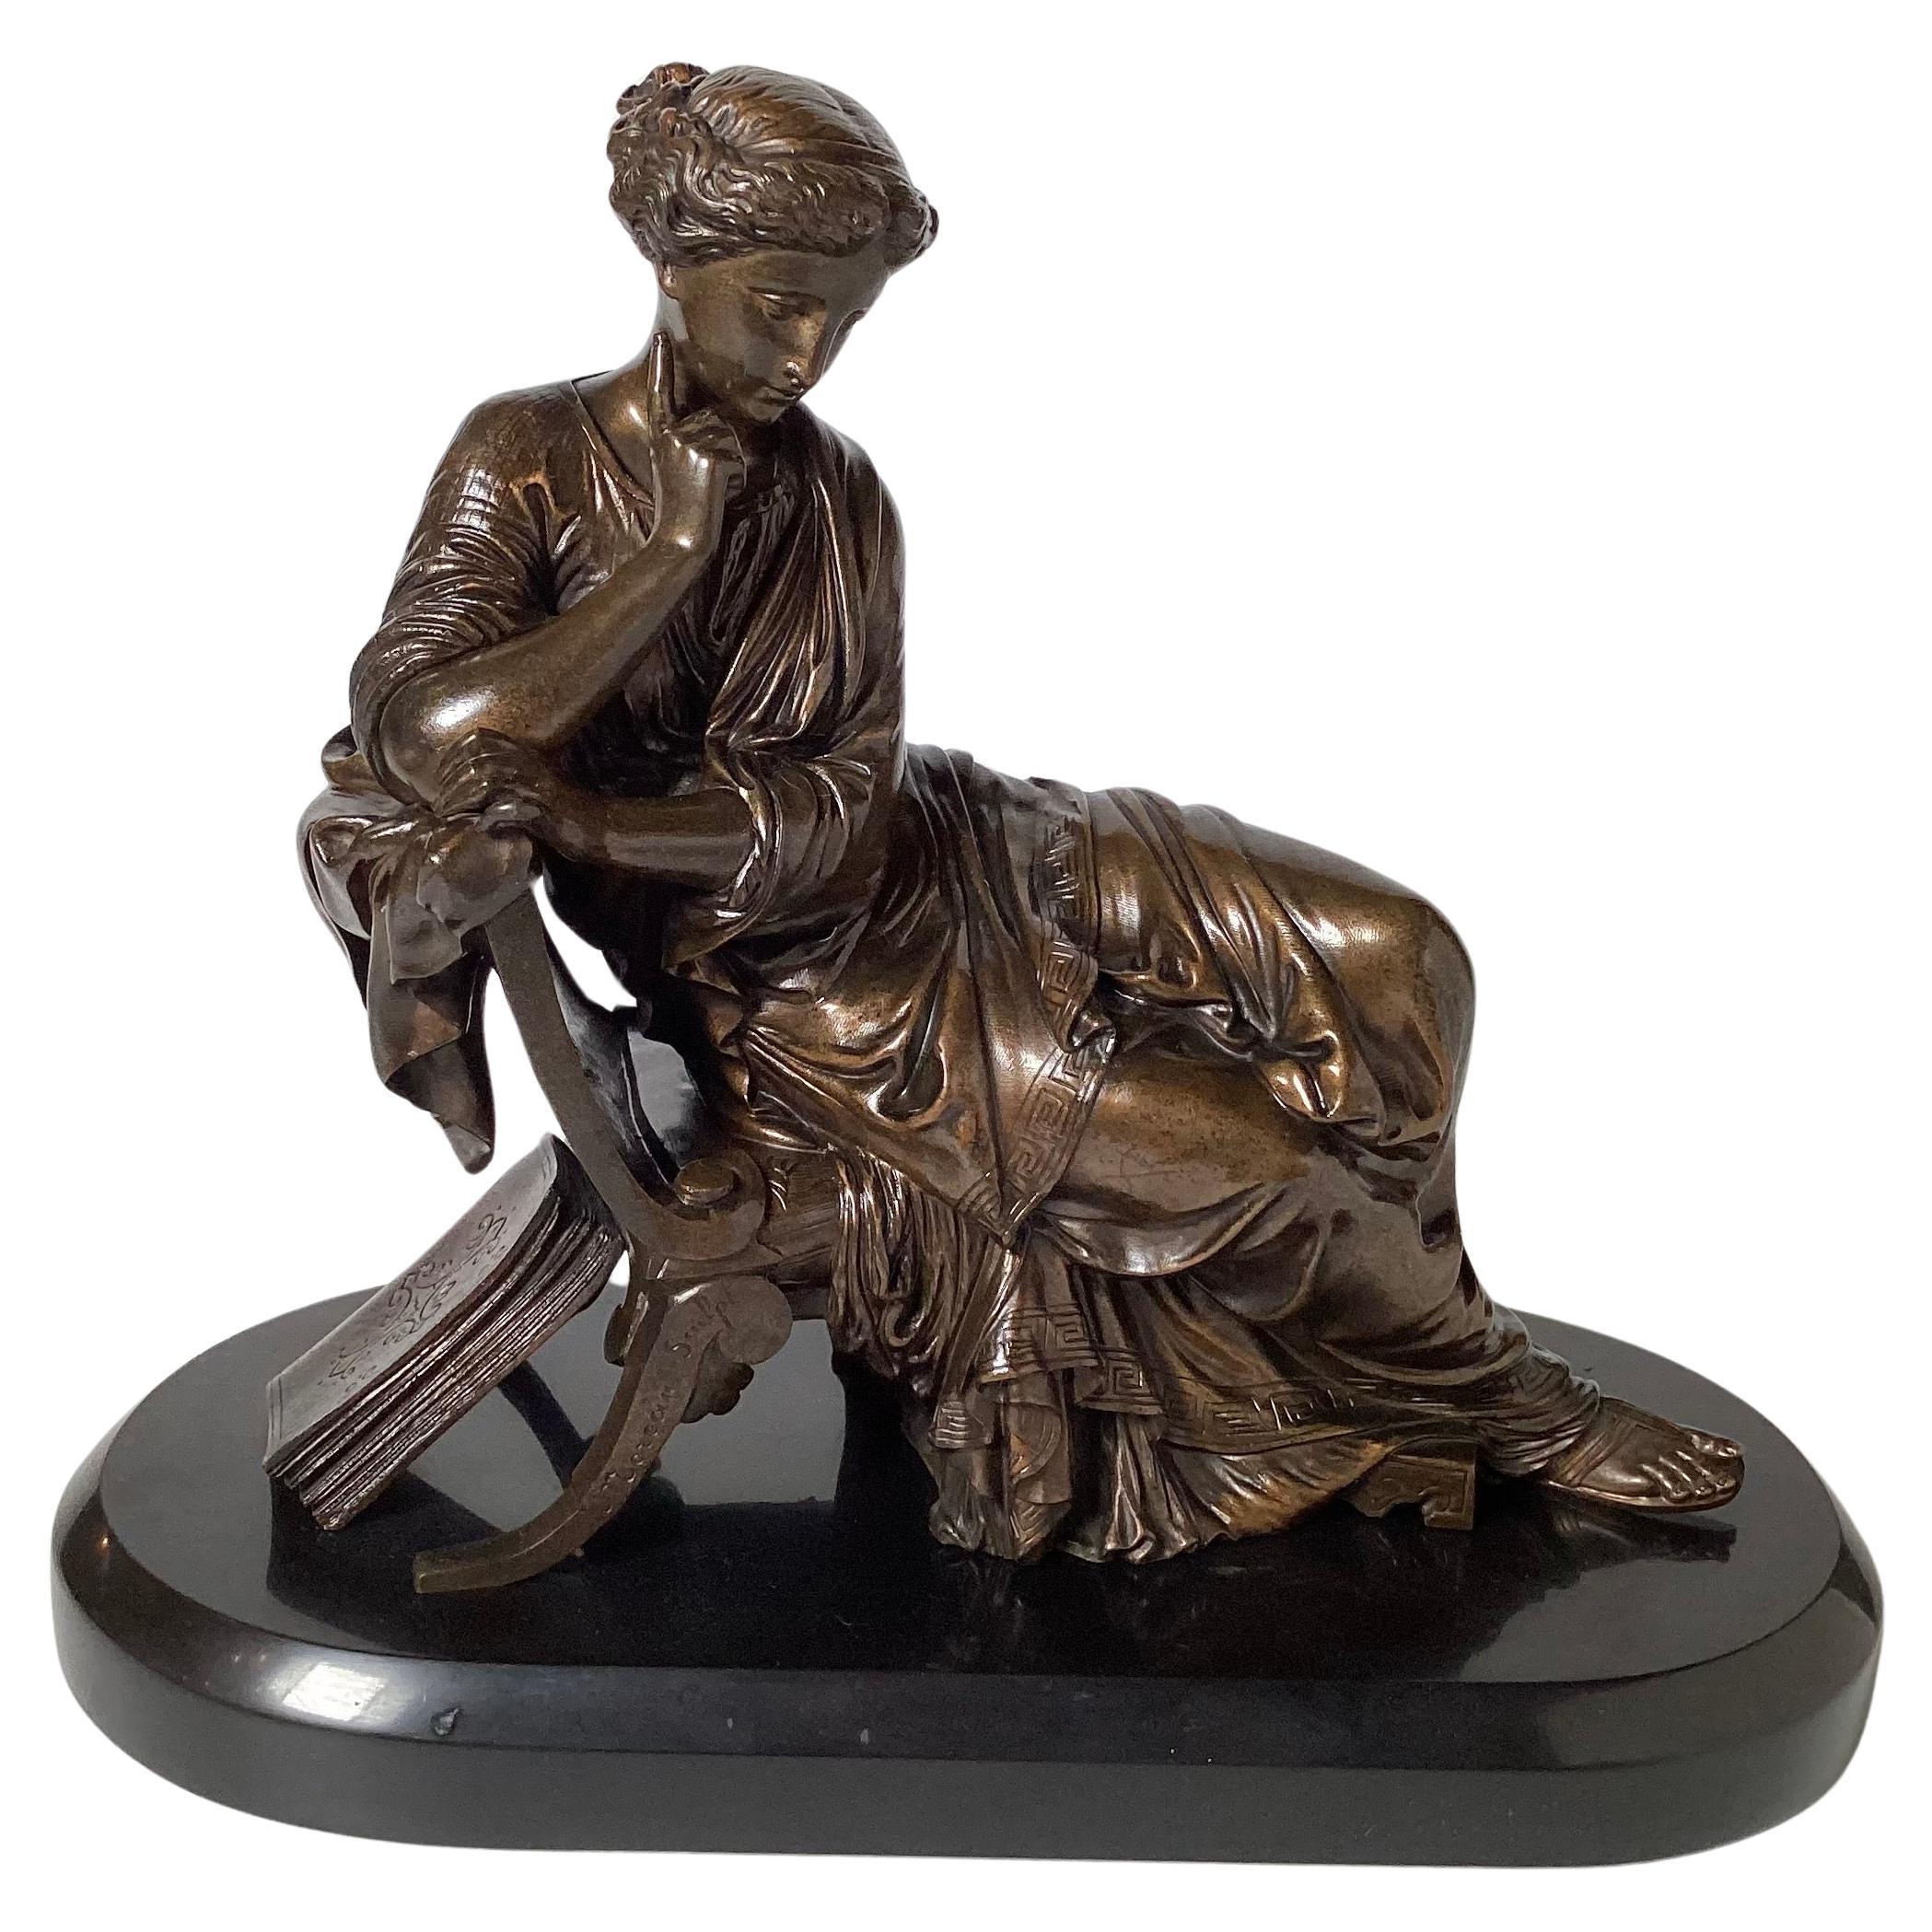 Patinierte Bronze des 19. Jahrhunderts nach Moreau auf Schiefersockel, patiniert